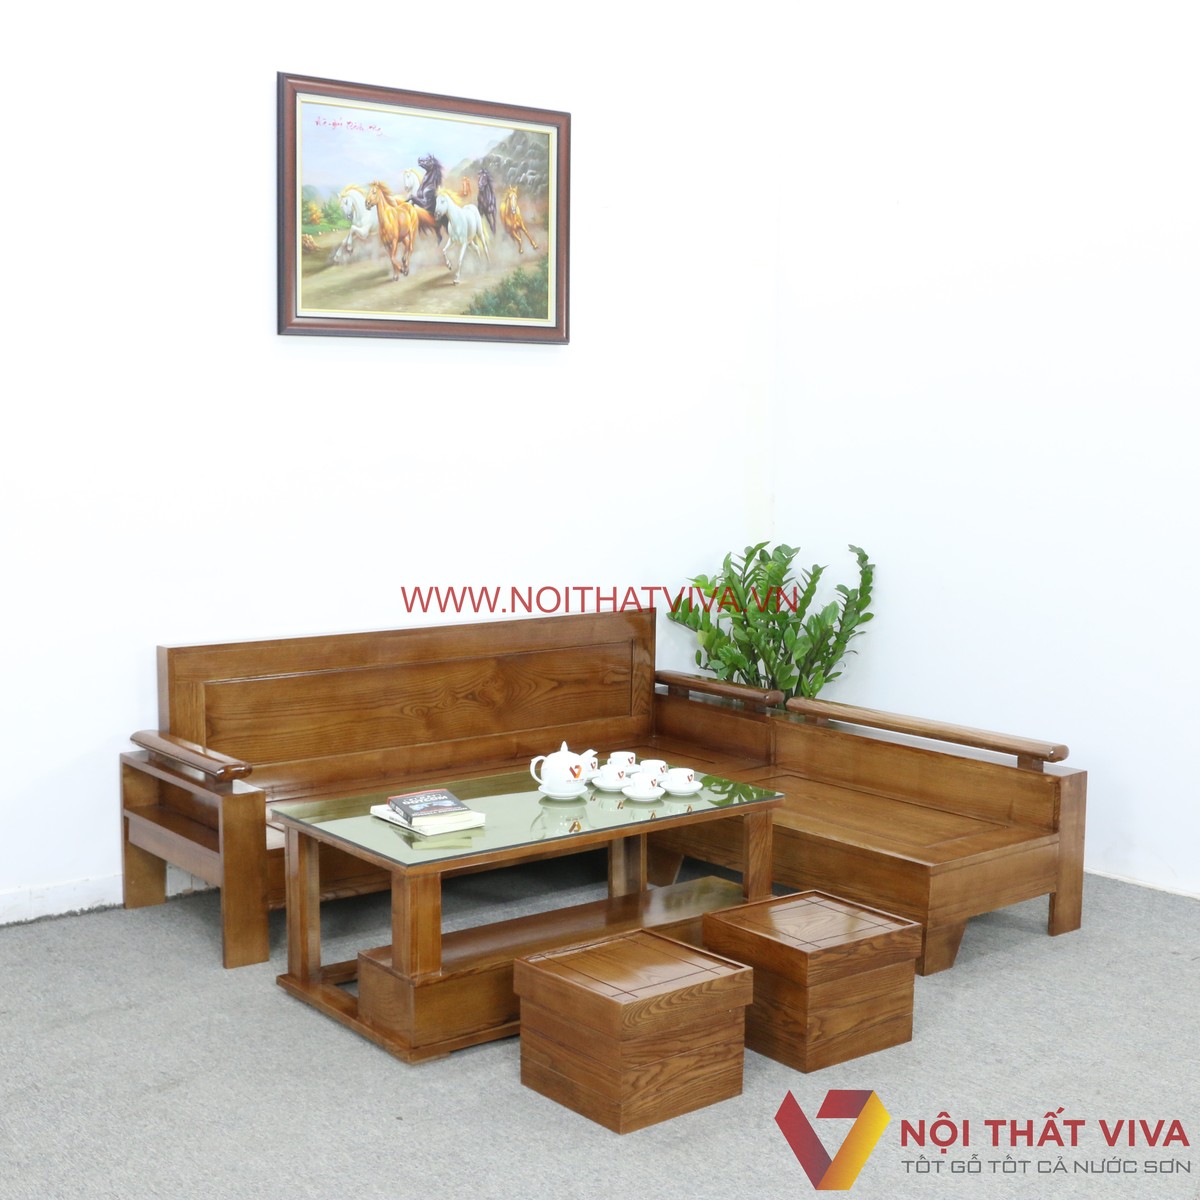 Bàn ghế gỗ đơn giản - Với mẫu bàn ghế gỗ đơn giản này, bạn sẽ có thêm một không gian đẹp và gần gũi hơn trong ngôi nhà của mình. Với thiết kế tối giản, bàn ghế gỗ đơn giản này phù hợp với nhiều phong cách trang trí và mang lại sự ấm cúng cho không gian của bạn.